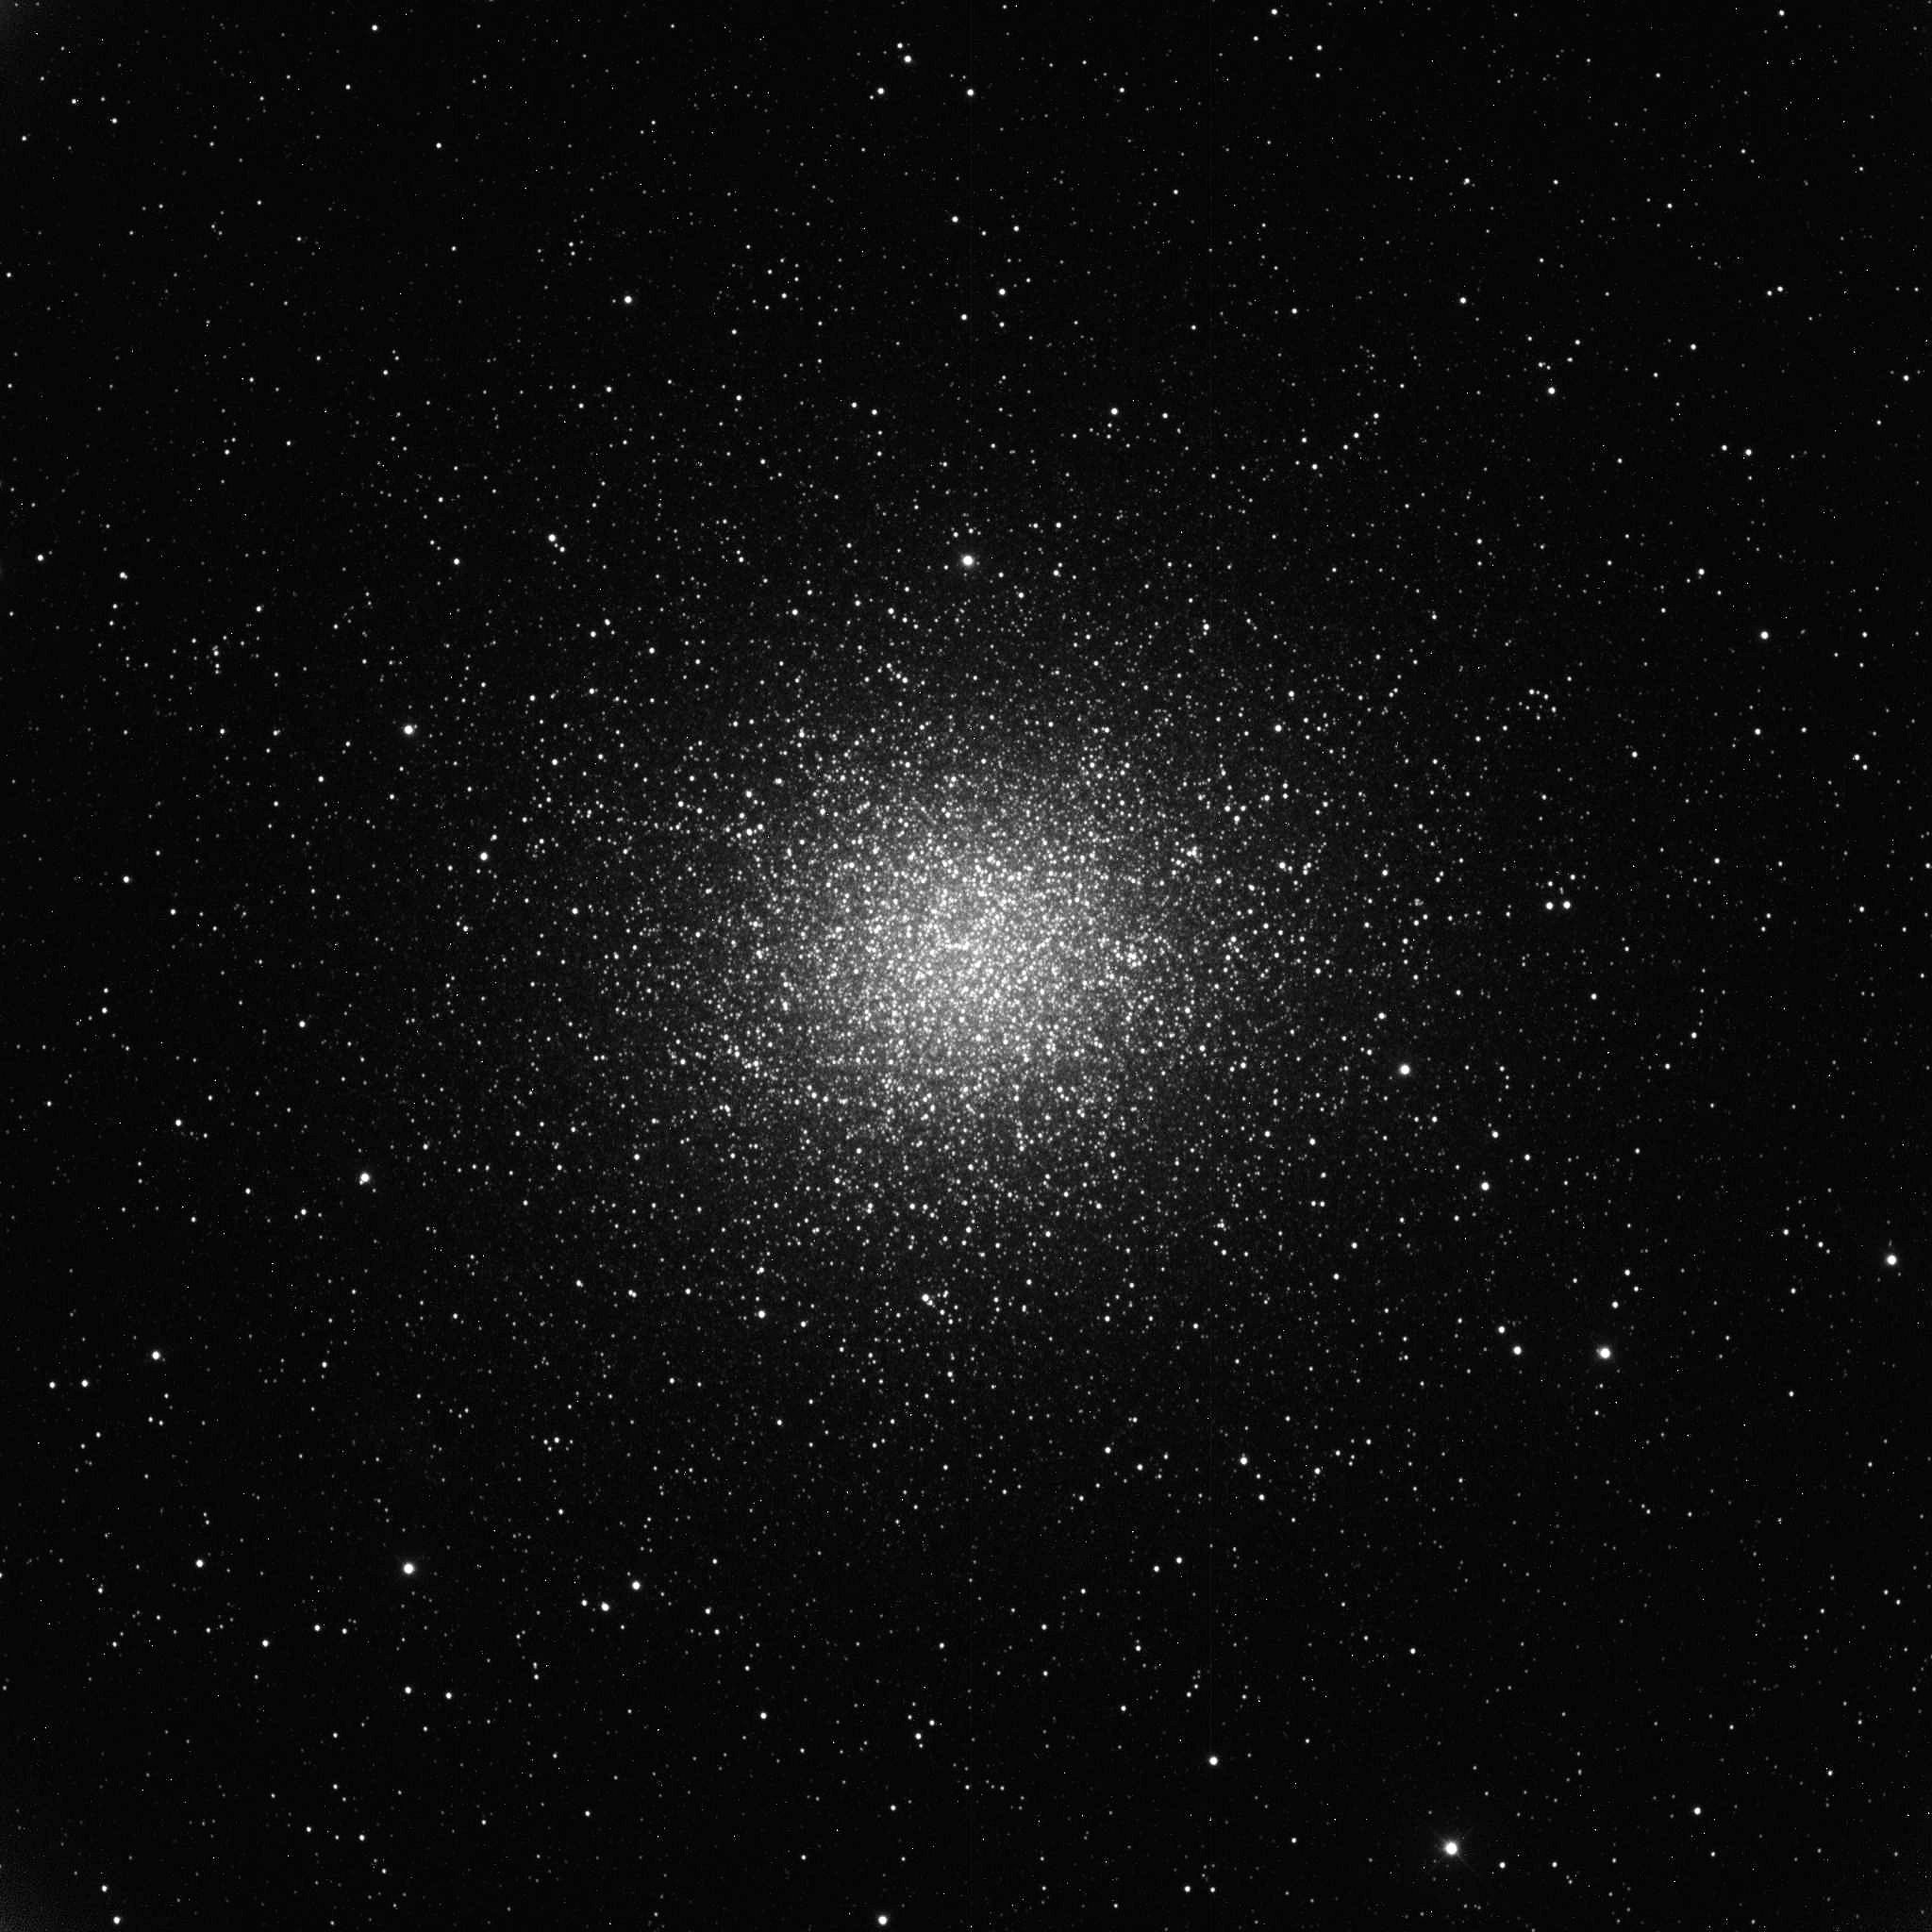 Kugelsternhaufen Omega Centauri im Mai 2020 - Aufnahme via iTelescope, Siding Spring (Australien) mit 320mm Astrograph - Brennweite 2885 mm - f/9,0 - Belichtungszeit: 120 sec